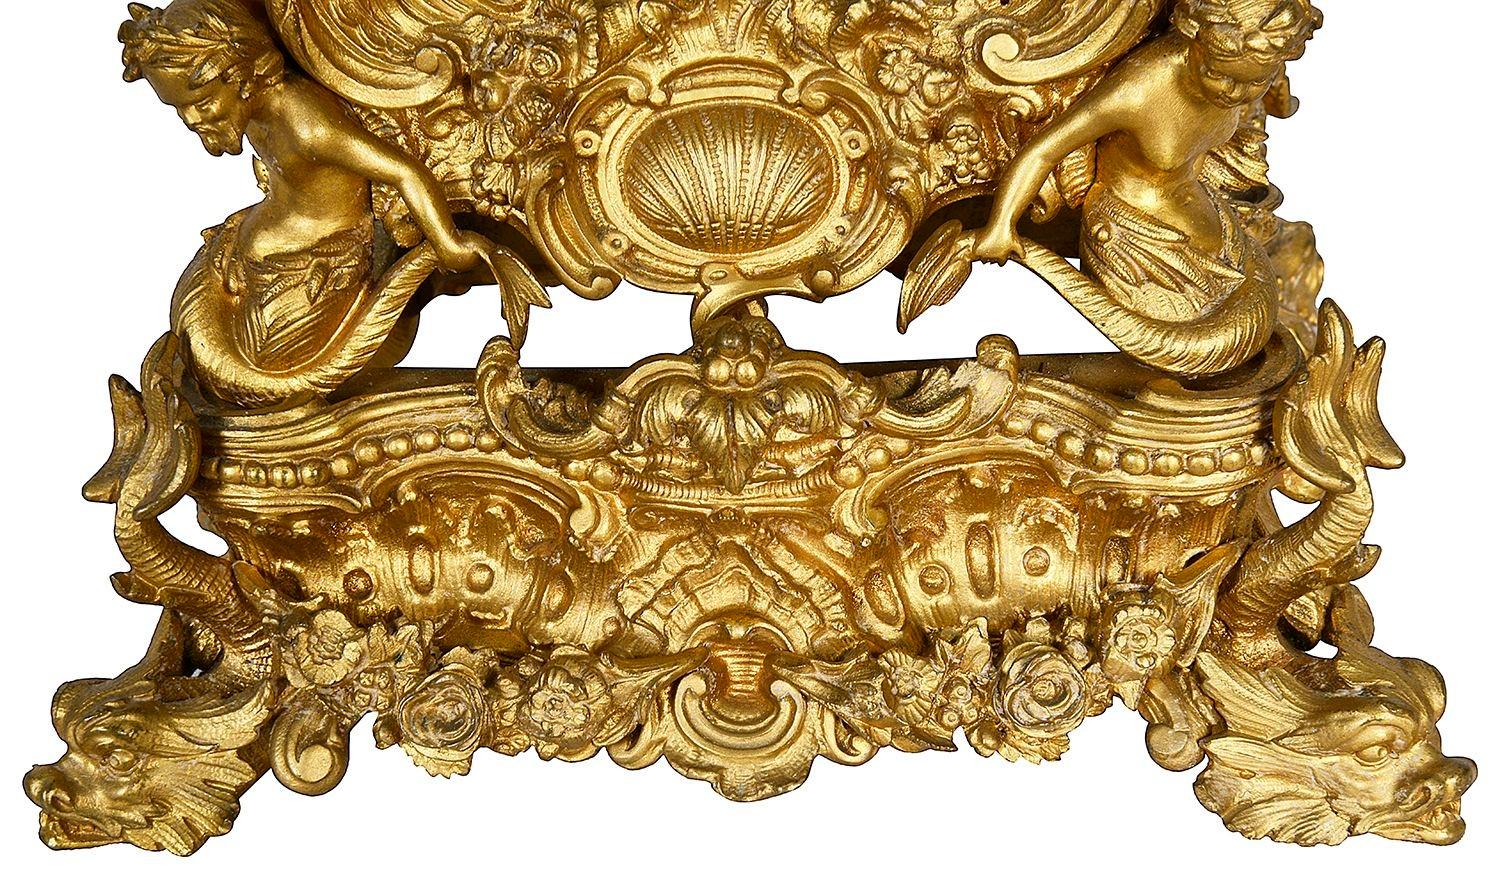 Maravilloso reloj de carruaje ornamentado en ormolu dorado estilo Luis XVI. Porcelana en venta